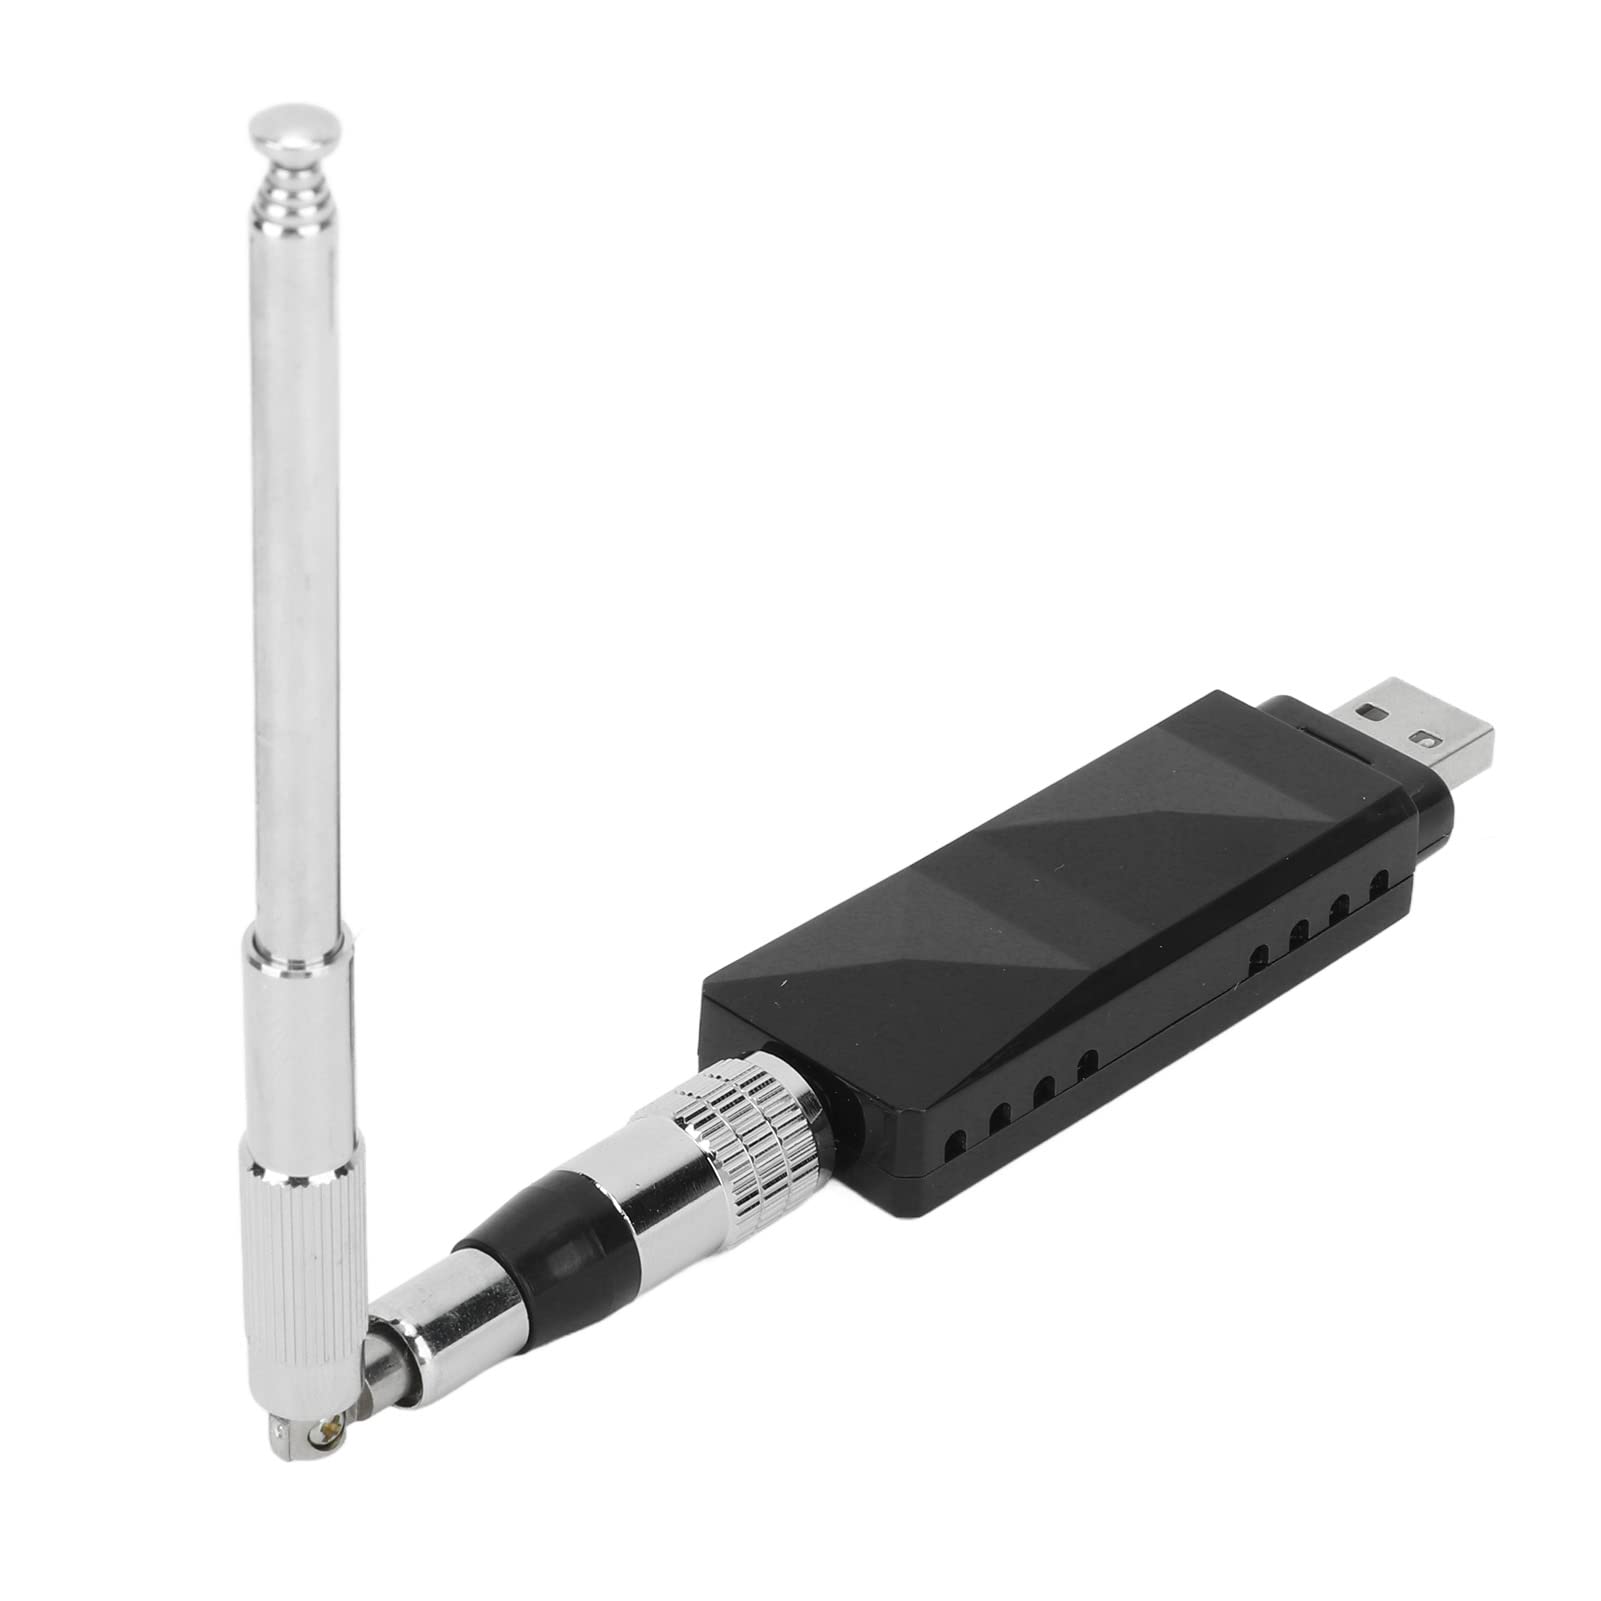 Dual Channel AIS Empfänger Zweikanaliger AIS Empfänger USB Ausgang mit Antenne Edelstahl Faltbar Tragbar für Boot von Yctze